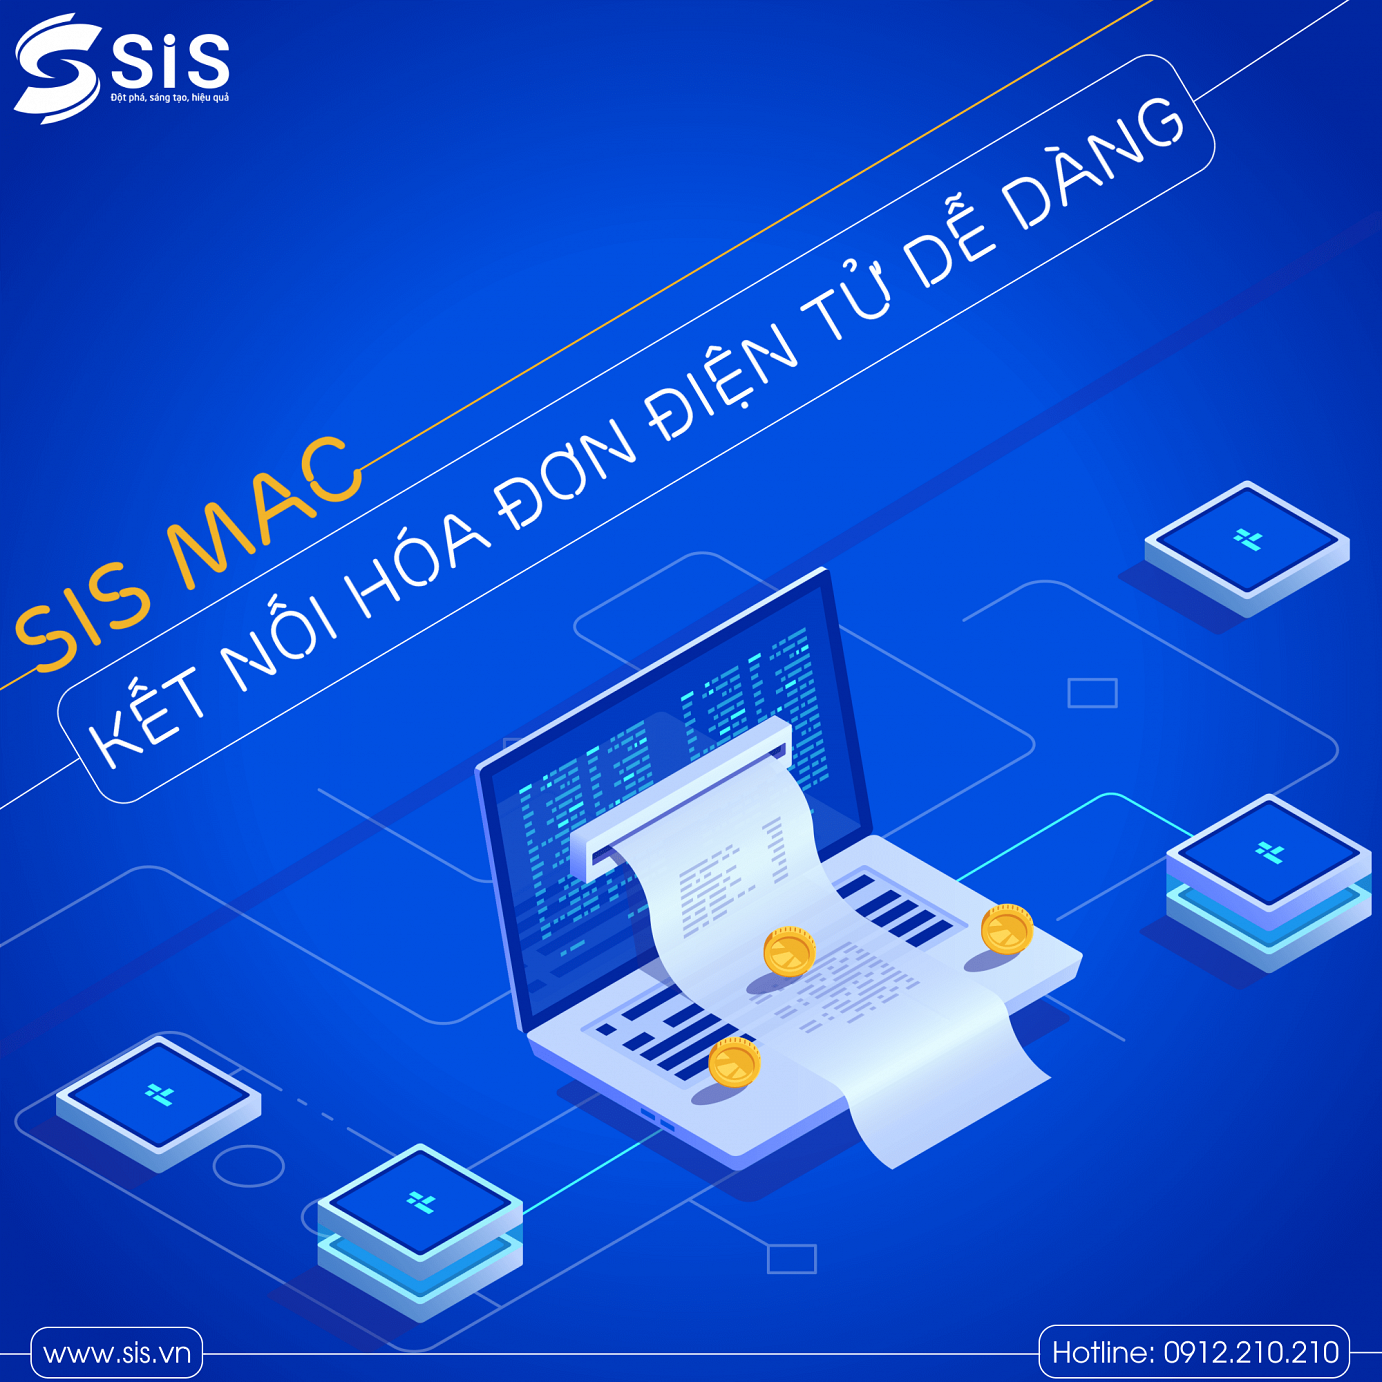 Phần mềm Kế toán SIS MAC tích hợp 2 chiều hóa đơn điện tử của hầu hết các nhà cung cấp trên thị trường.